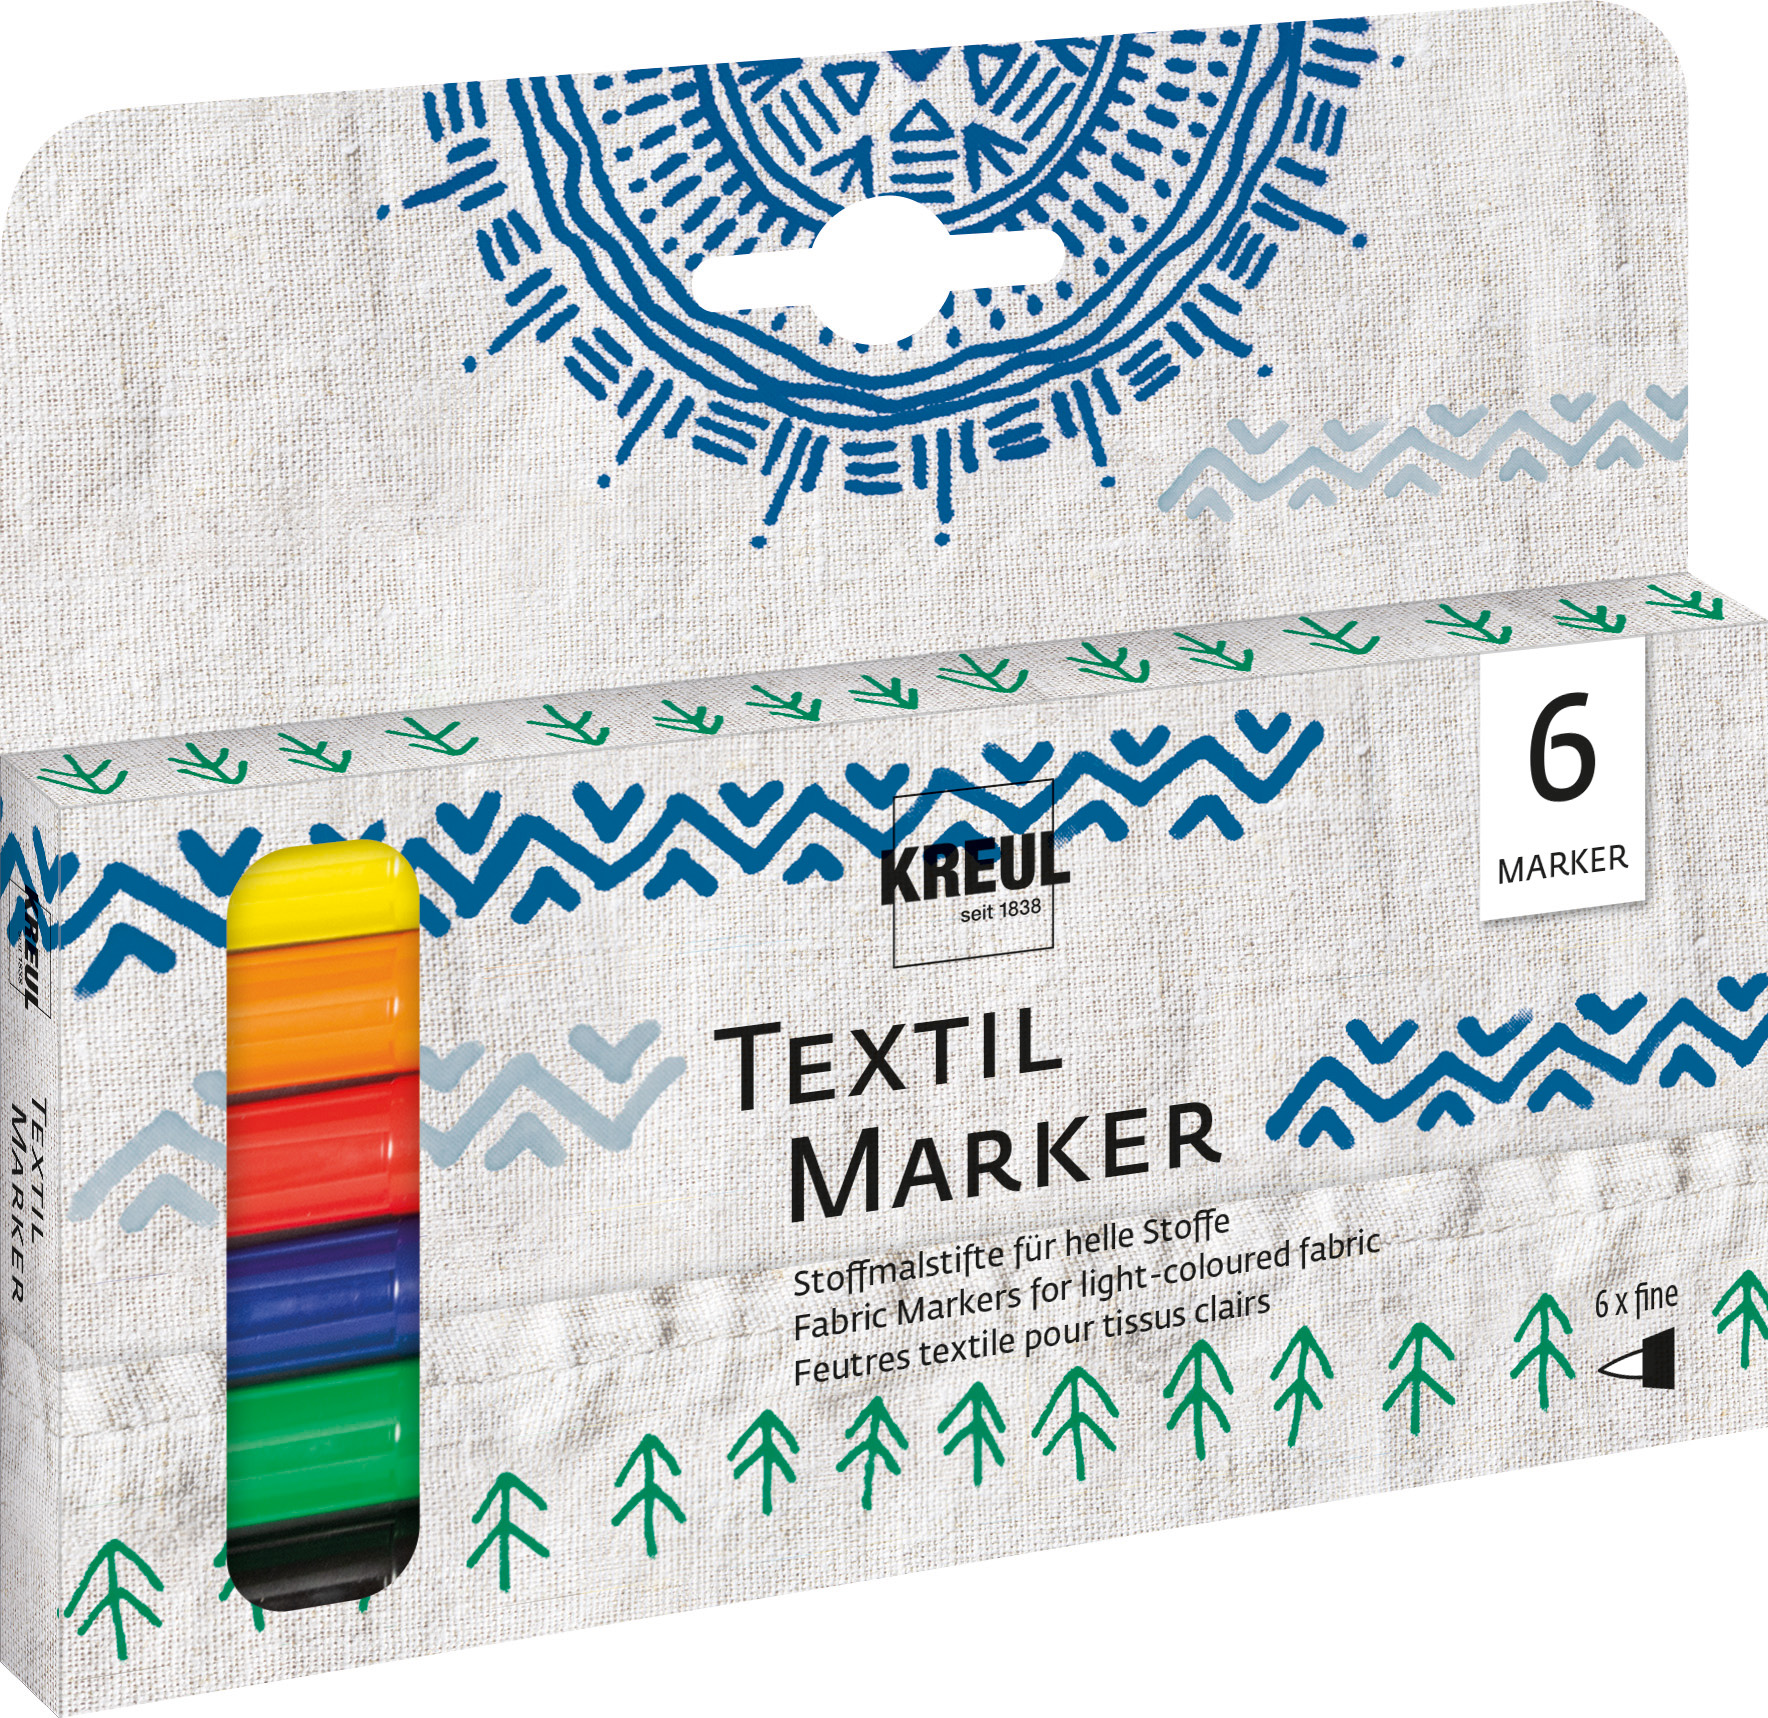 KREUL Textil Marker fine 6er Set Nettopreis